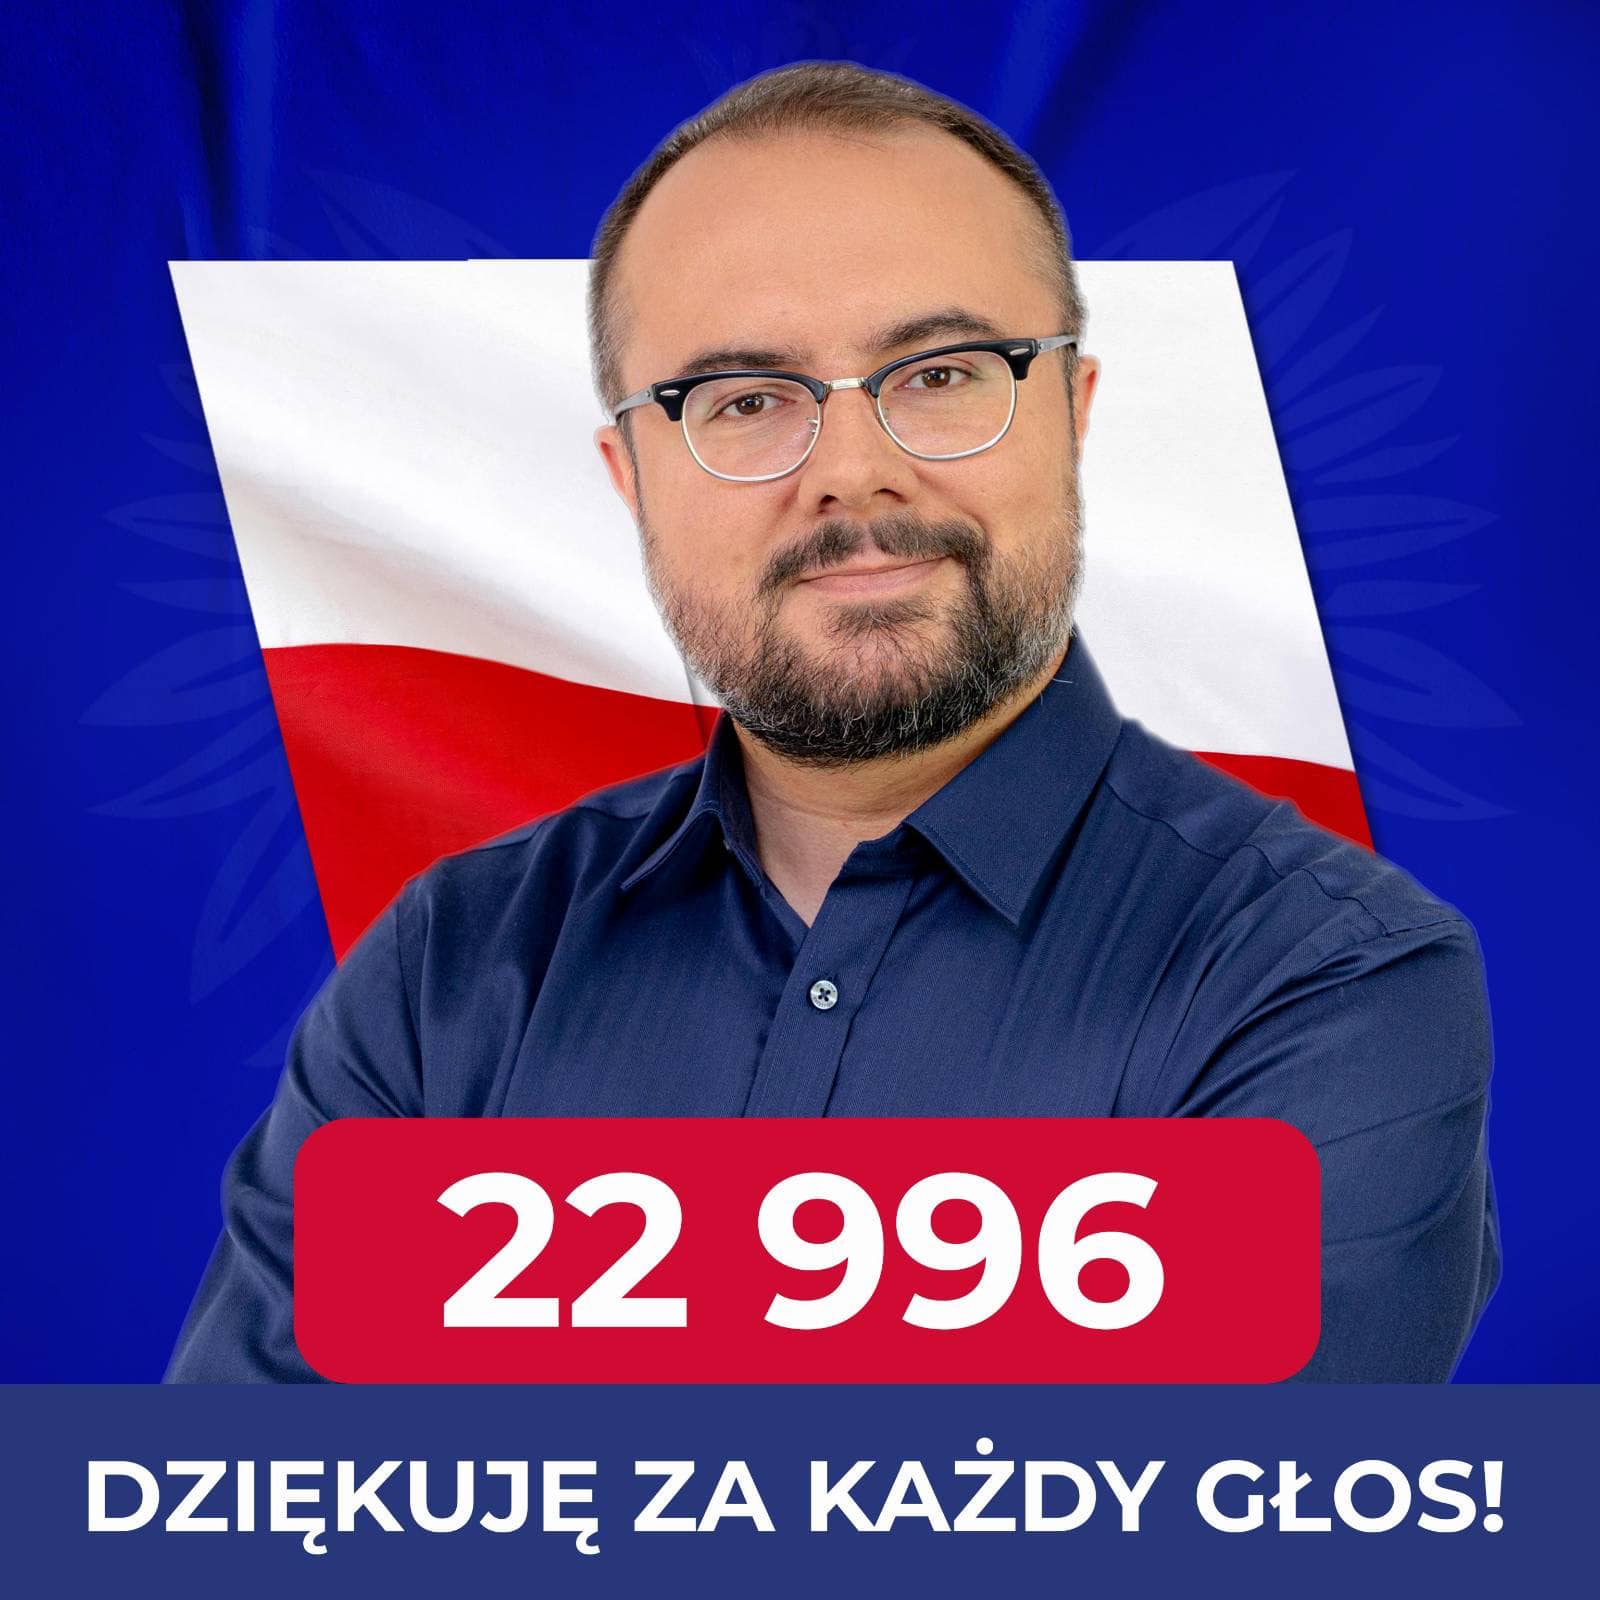 Paweł Jabłoński po raz pierwszy został posłem